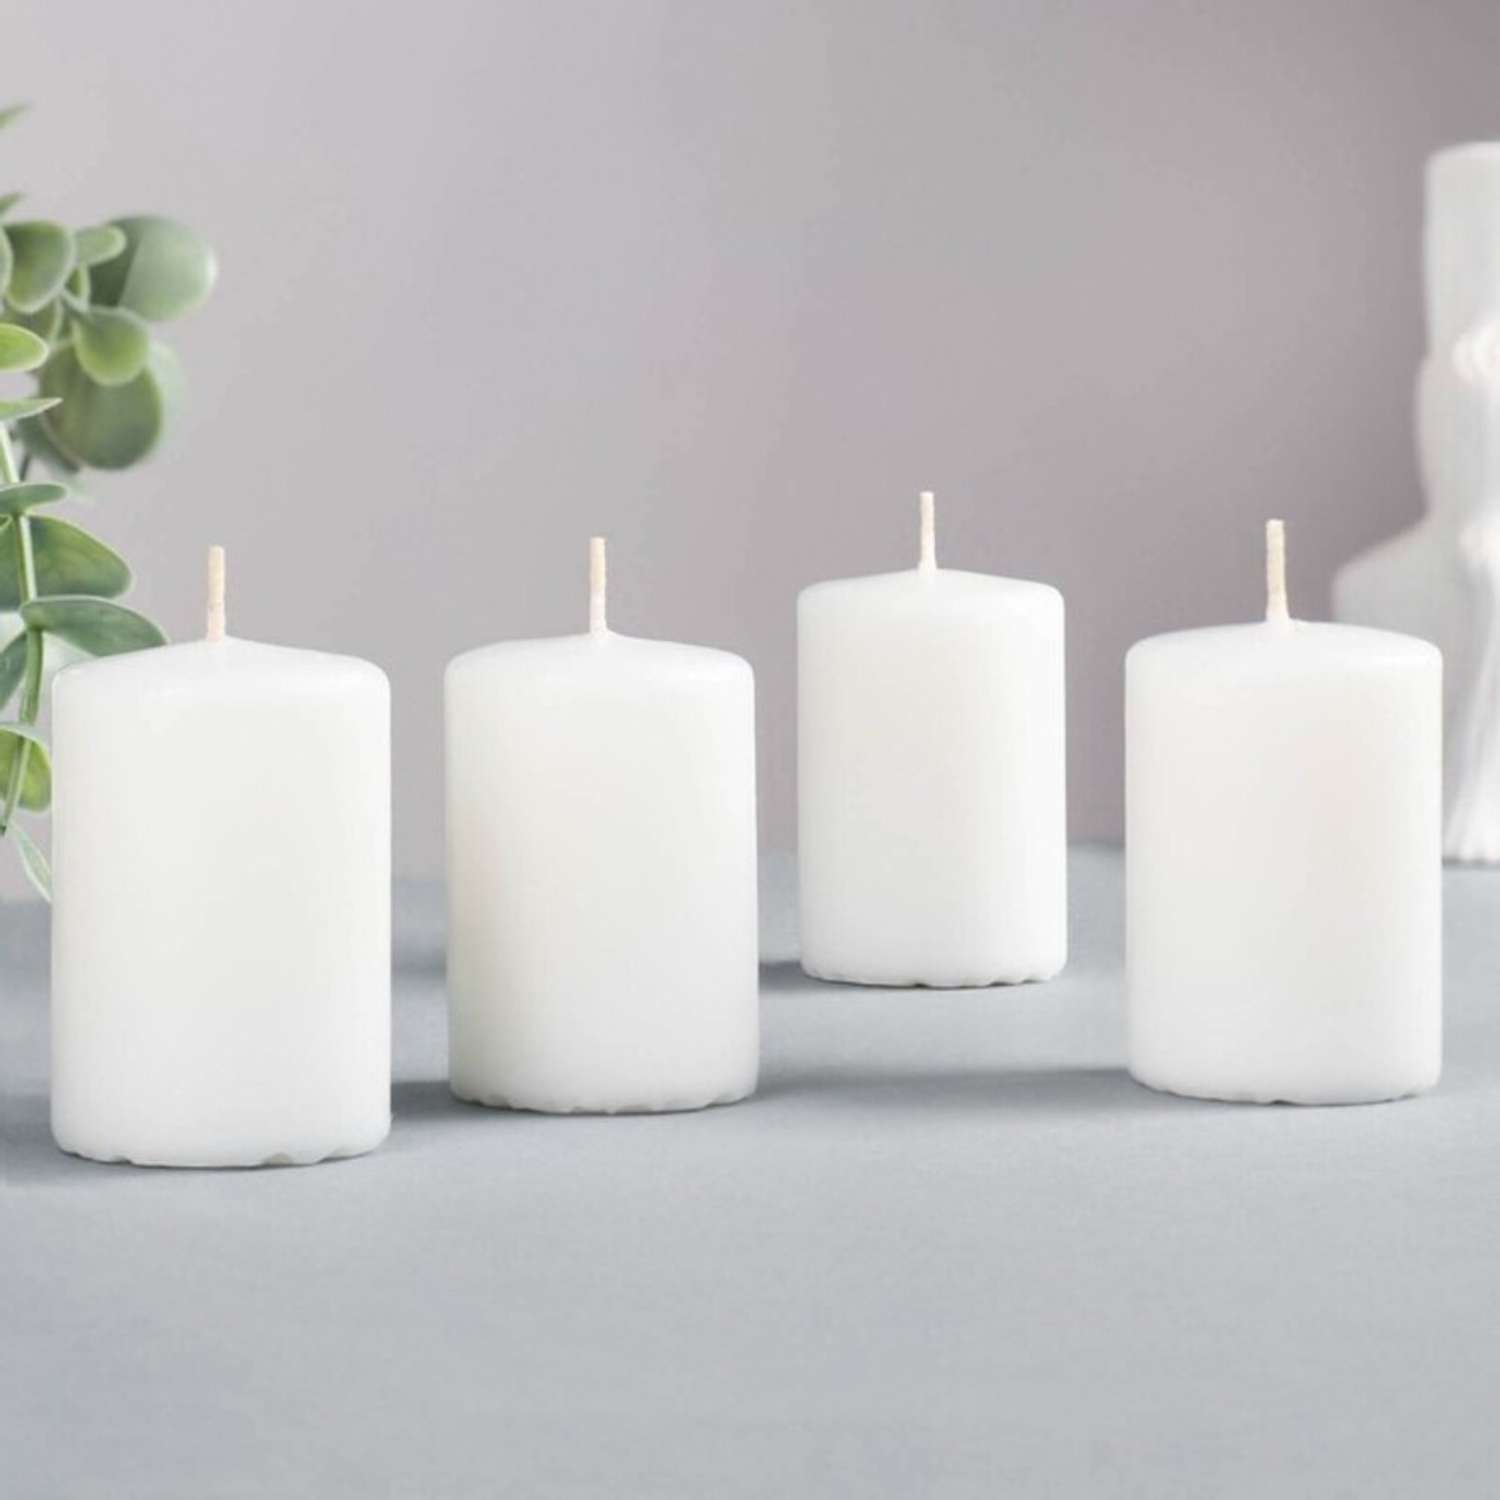 Набор свечей-цилиндров Fibo белые интерьерные 4 штуки 6x4 см - фото 1